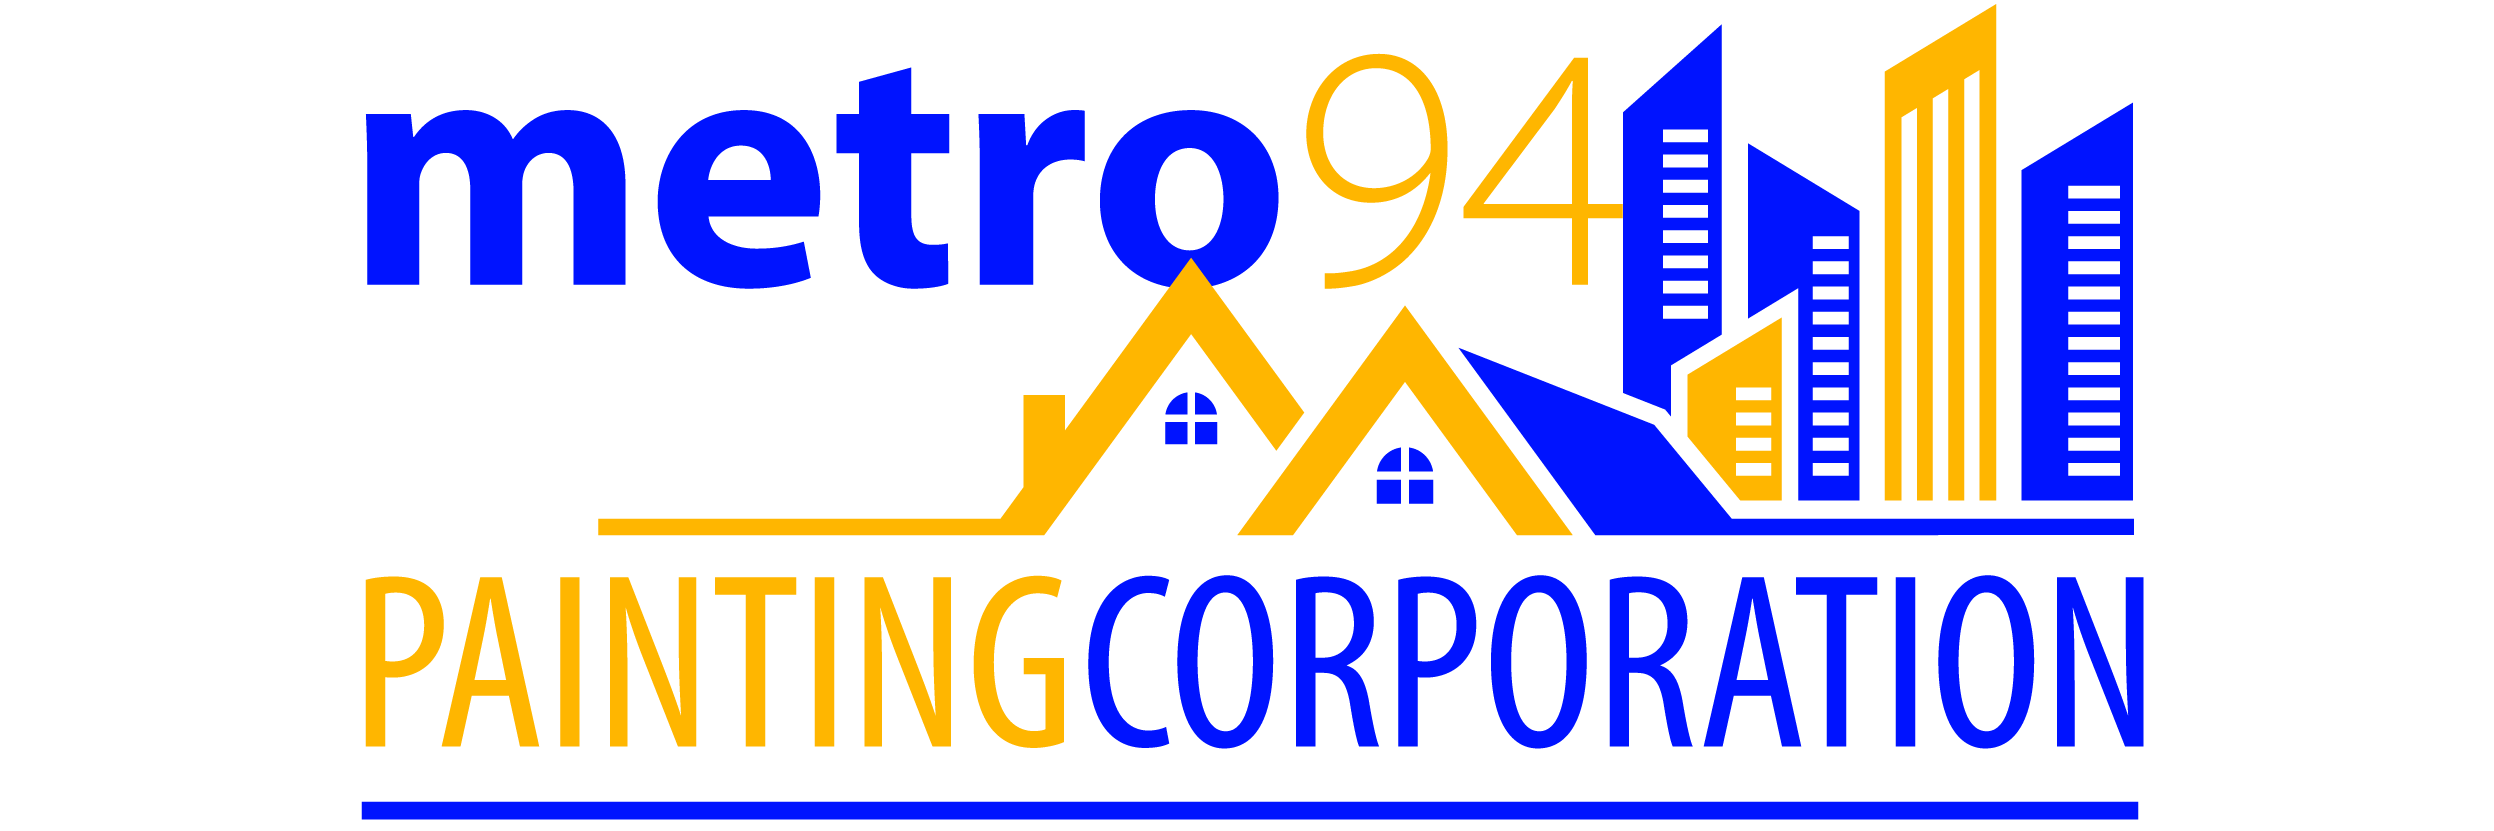 Metro94 Painting Corporation